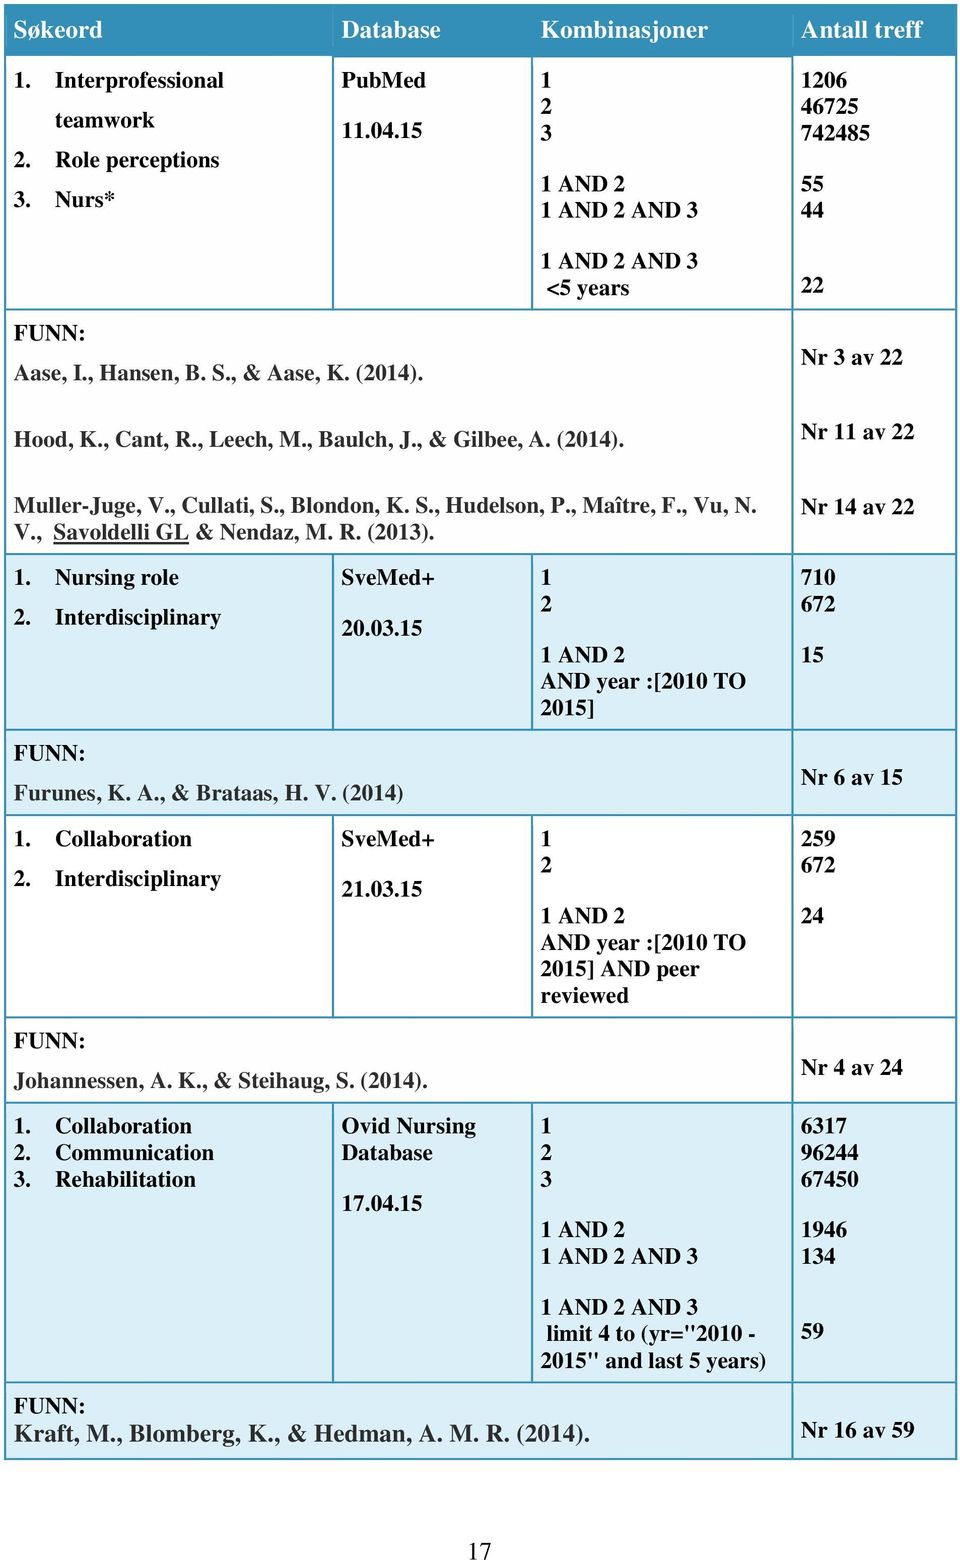 , Cullati, S., Blondon, K. S., Hudelson, P., Maître, F., Vu, N. V., Savoldelli GL & Nendaz, M. R. (2013). Nr 14 av 22 1. Nursing role 2. Interdisciplinary SveMed+ 20.03.